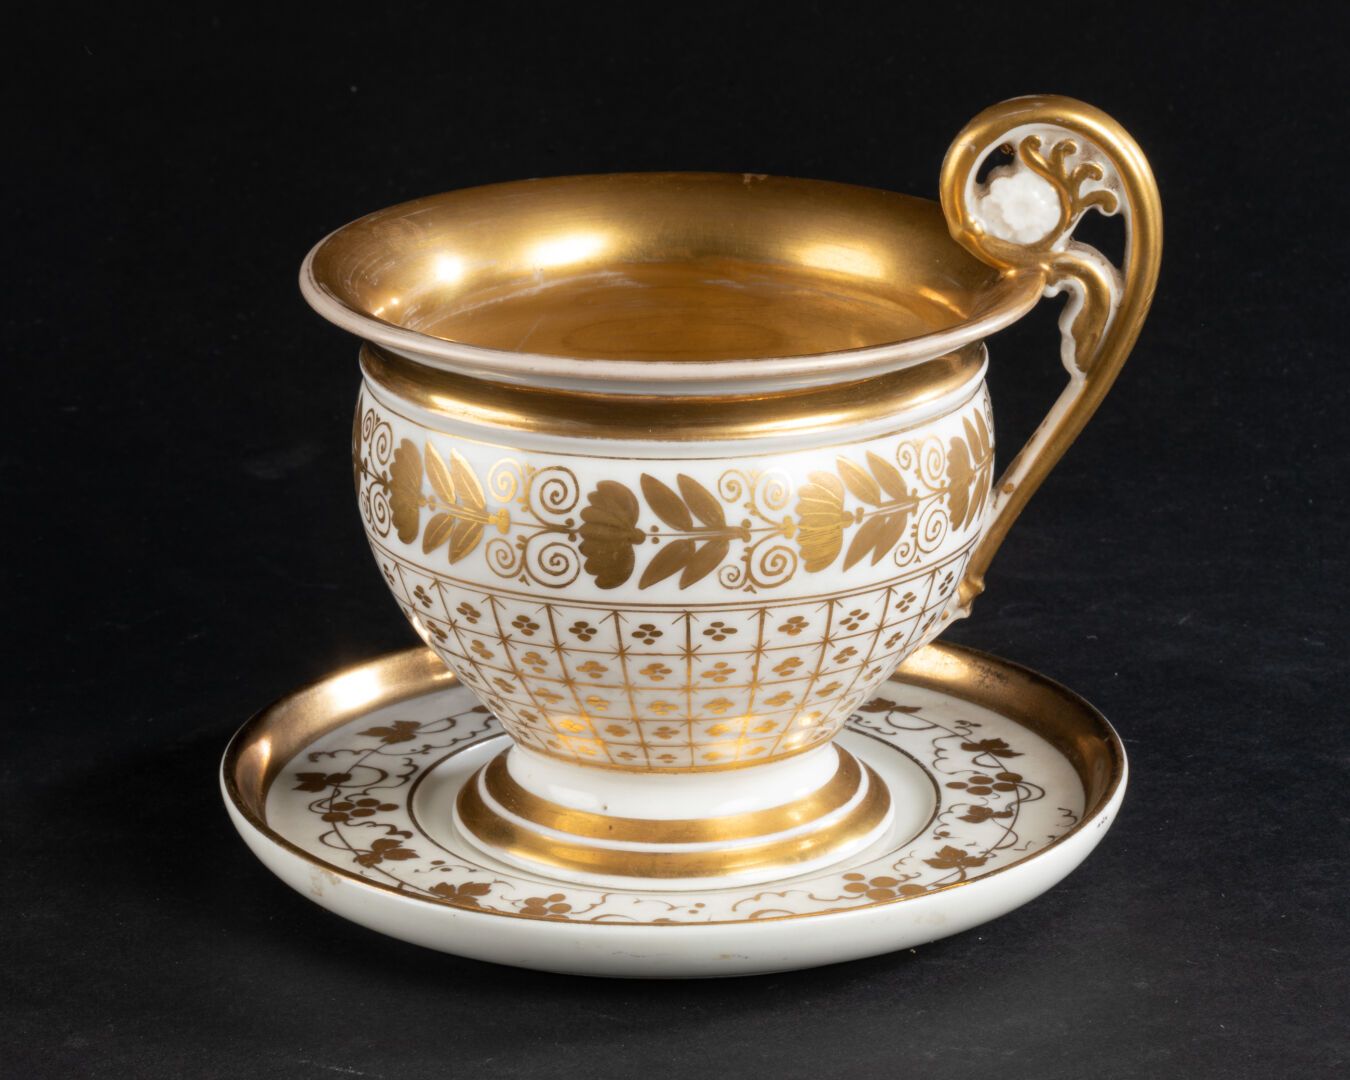 PARIS - XIXè SIÈCLE 杯子和它的茶盘

饰有花架、叶子和花环，手柄为卷轴式。

镀金图案的瓷器

高脚杯11厘米

D. 碟子14厘米